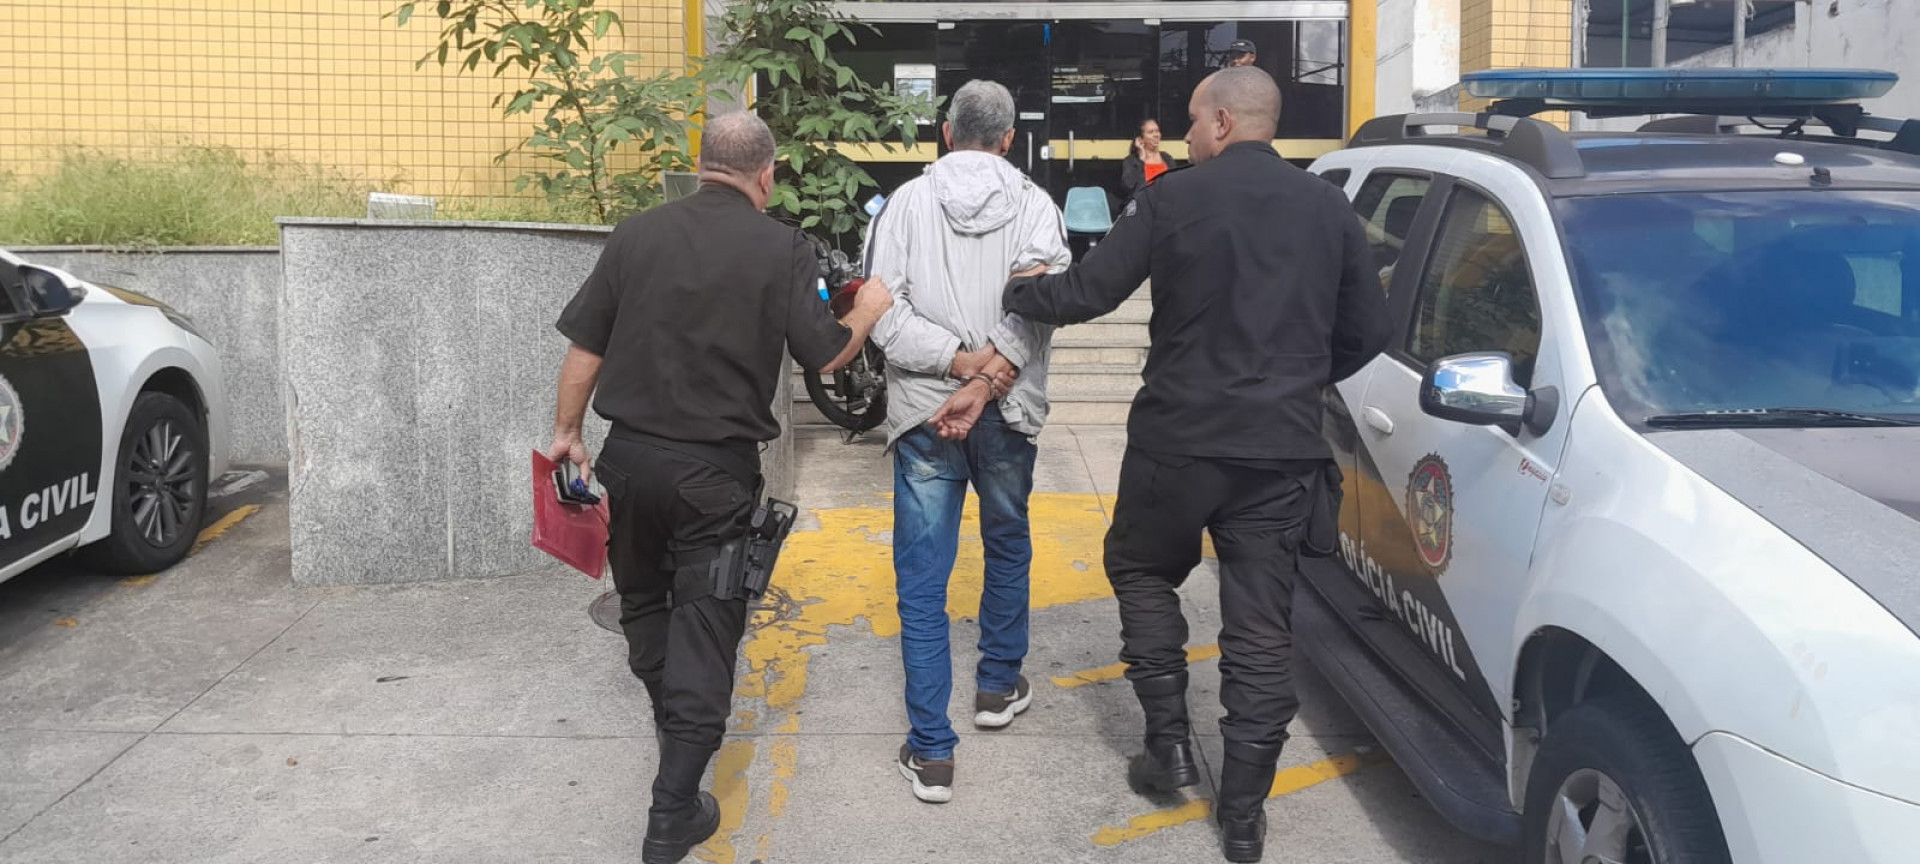 Marcelo Alexandre da Silva Martins foi conduzido preso para a 57ª DP - Divulgação